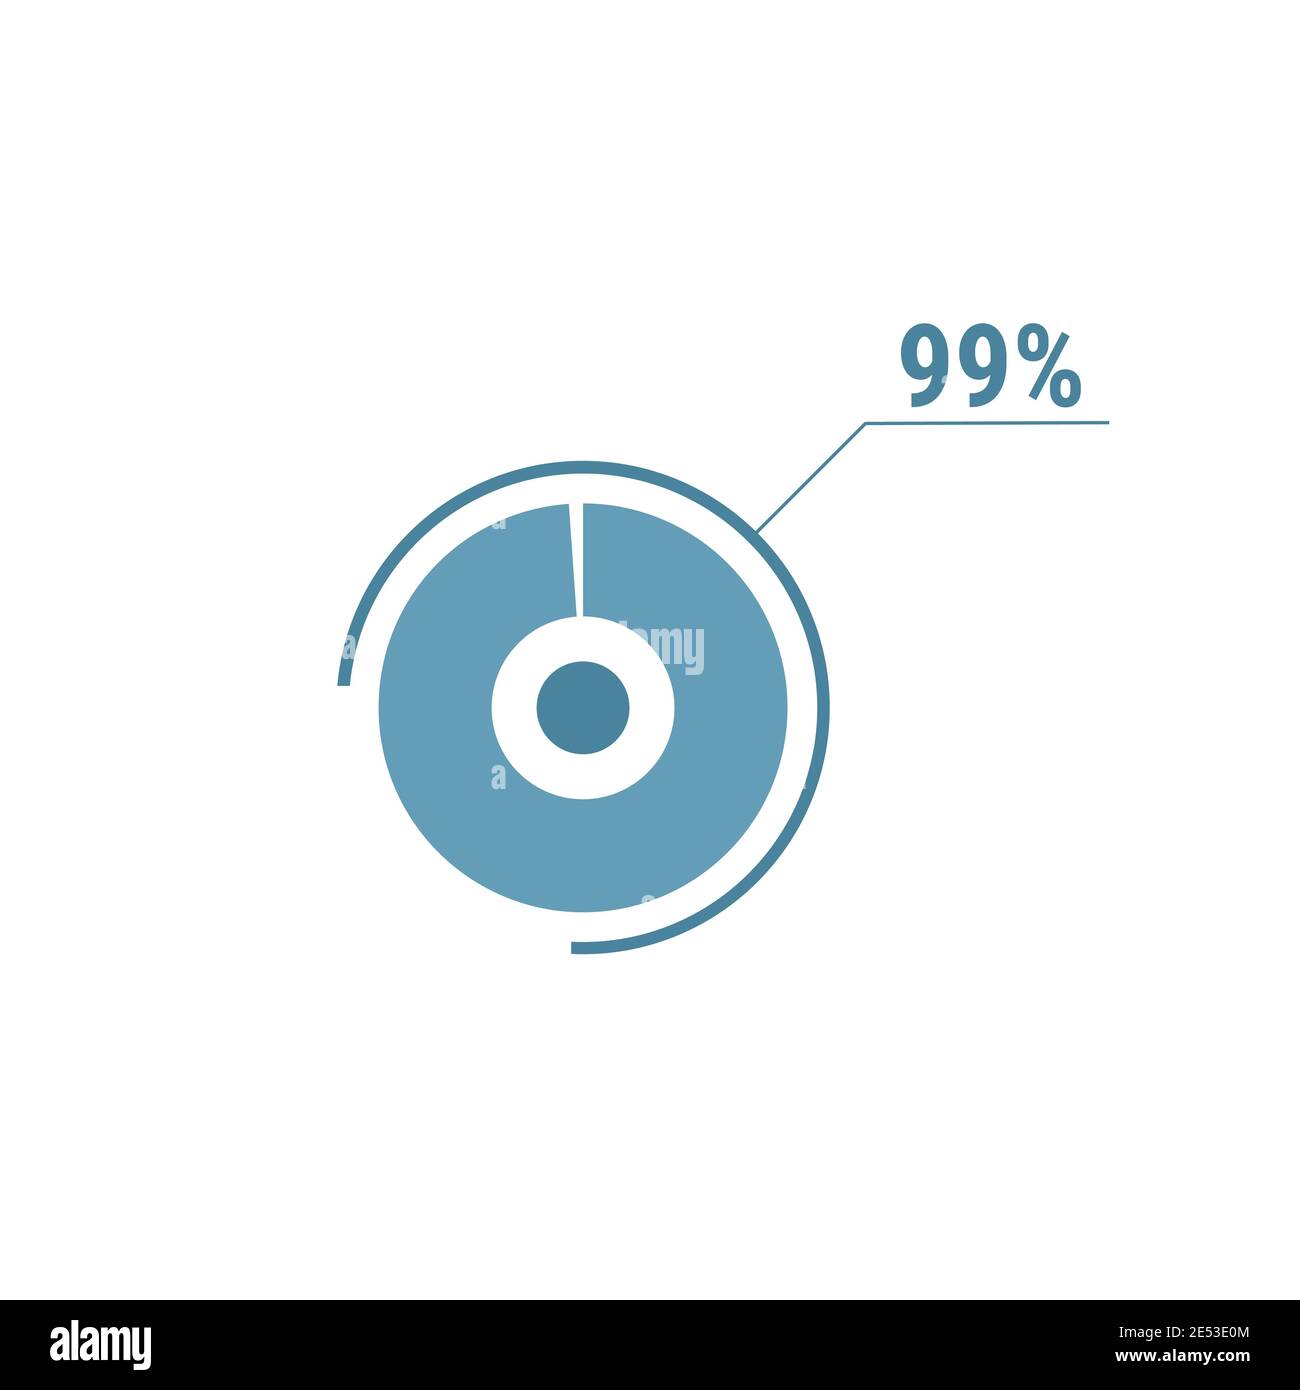 Neunundneunzig Prozent Diagramm Torte, 99 Prozent Kreis Diagramm, Vektor-Design-Illustration, blau auf weißem Hintergrund. Stock Vektor